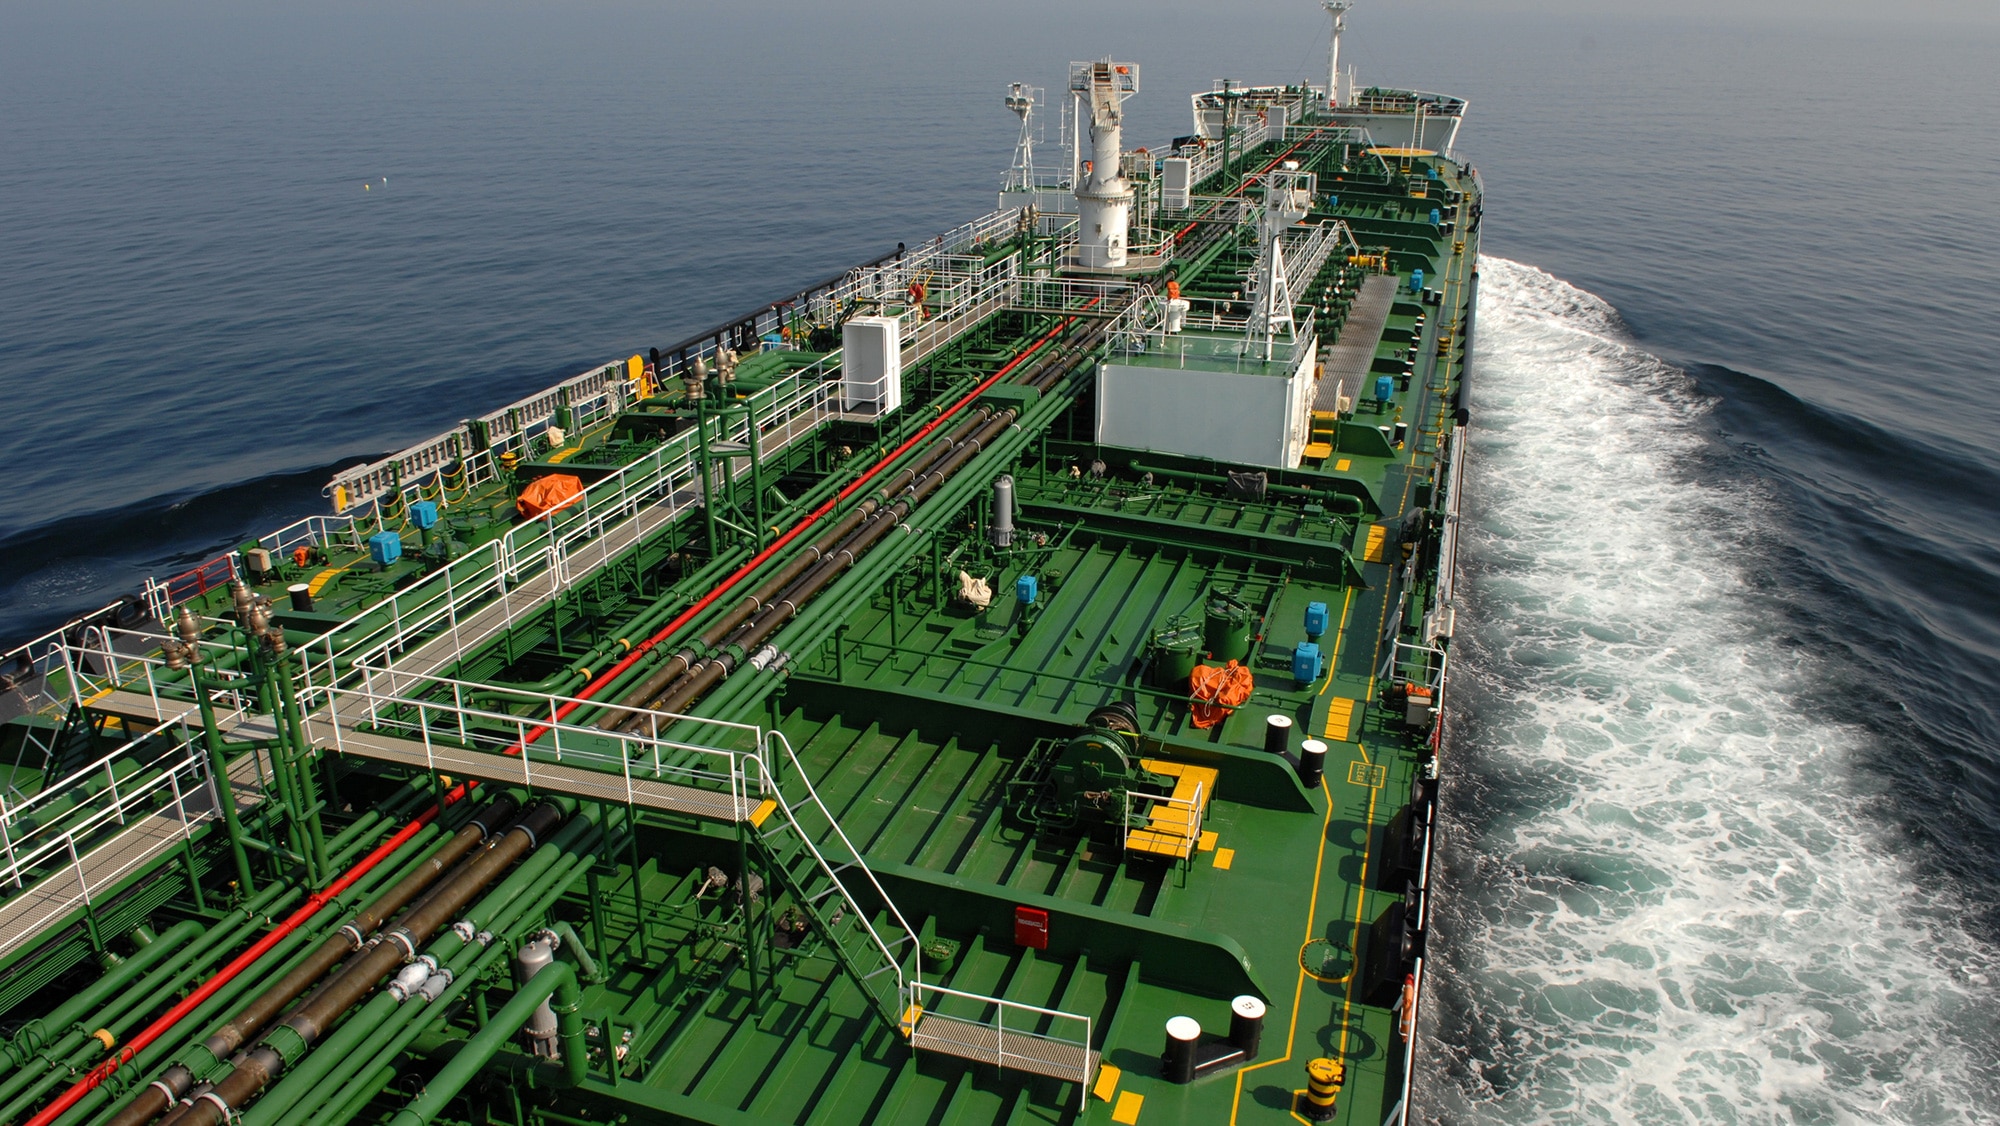 Main deck of oil tanker